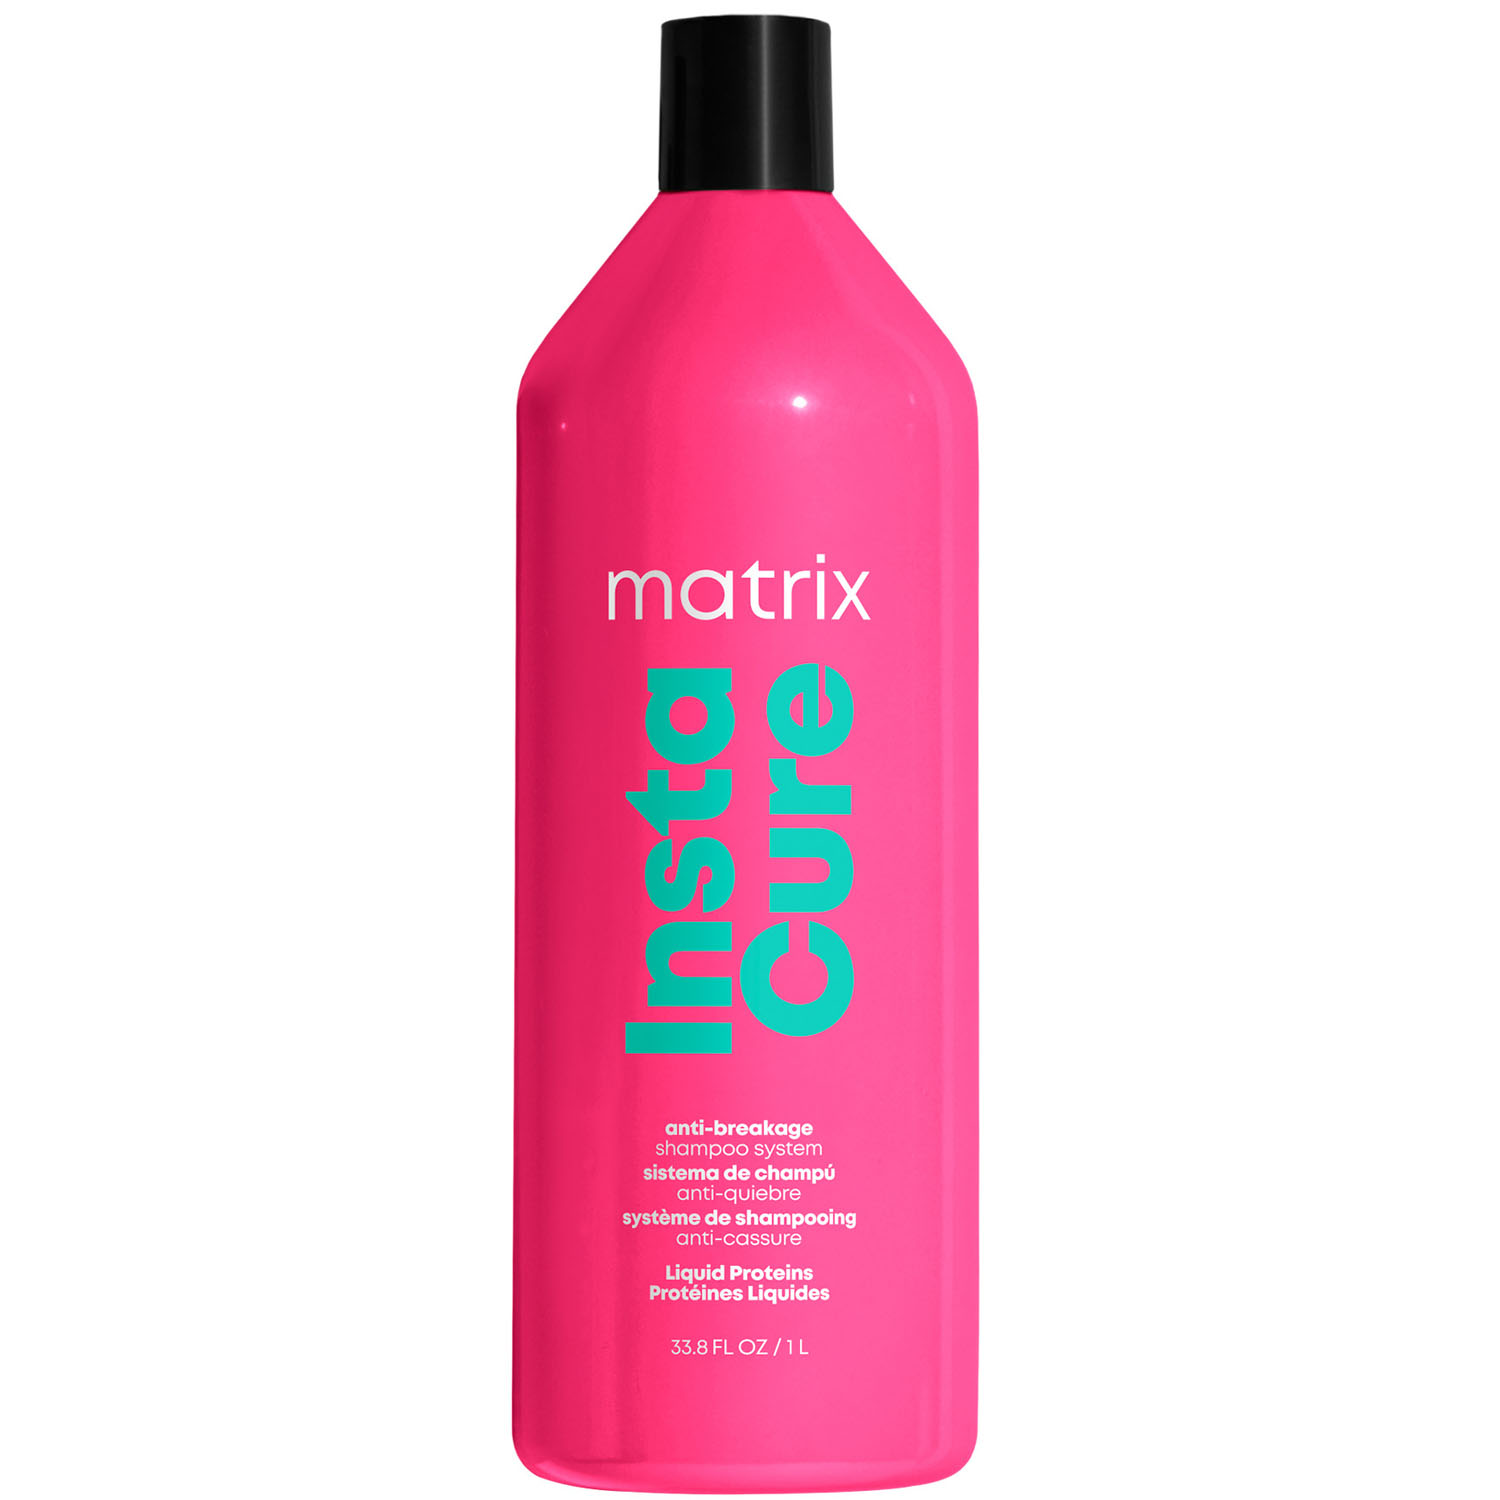 Matrix Профессиональный шампунь для восстановления волос с жидким протеином, 1000 мл (Matrix, Total Results) matrix профессиональный шампунь instacure для восстановления волос с жидким протеином 1000 мл х 2 шт matrix total results